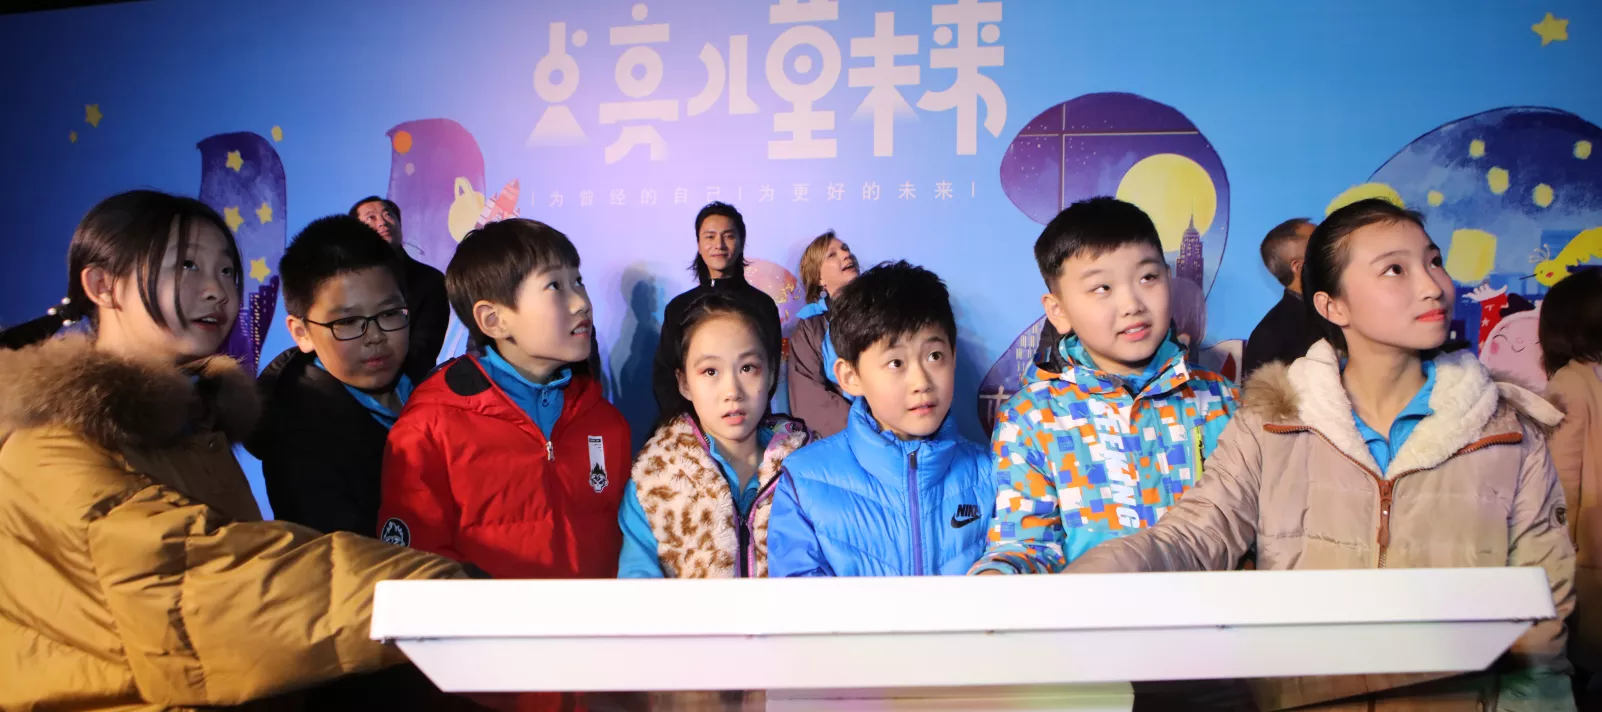 2018年11月20日，儿童触动触屏，以象征儿童友好的蓝色点亮了国家游泳中心（“水立方”）的外墙，以此庆祝世界儿童日。此次点亮活动由联合国儿童基金会、新华通讯社、新华网共同主办，并得到中国儿童中心等其他合作伙伴的支持。